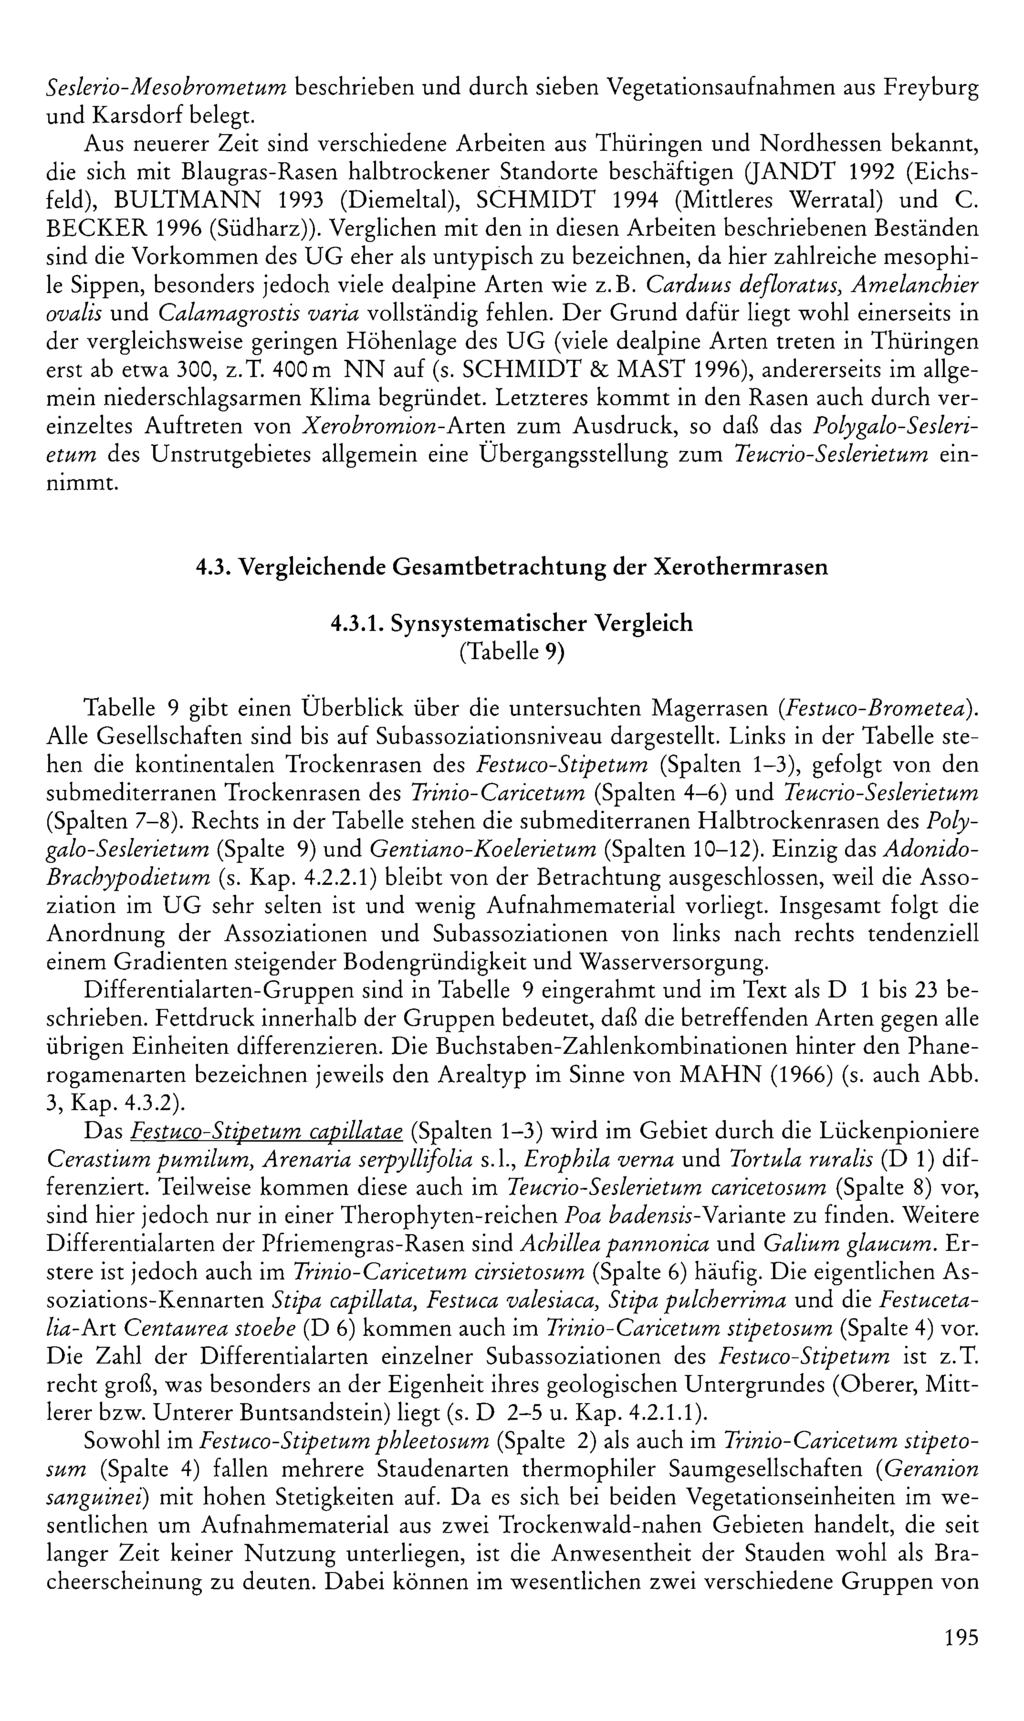 Seslerio-Mesobrometum beschrieben und durch sieben Vegetationsaufnahmen aus Freyburg und Karsdorf belegt Aus neuerer Zeit sind verschiedene Arbeiten aus Thüringen und Nordhessen bekannt, die sich mit